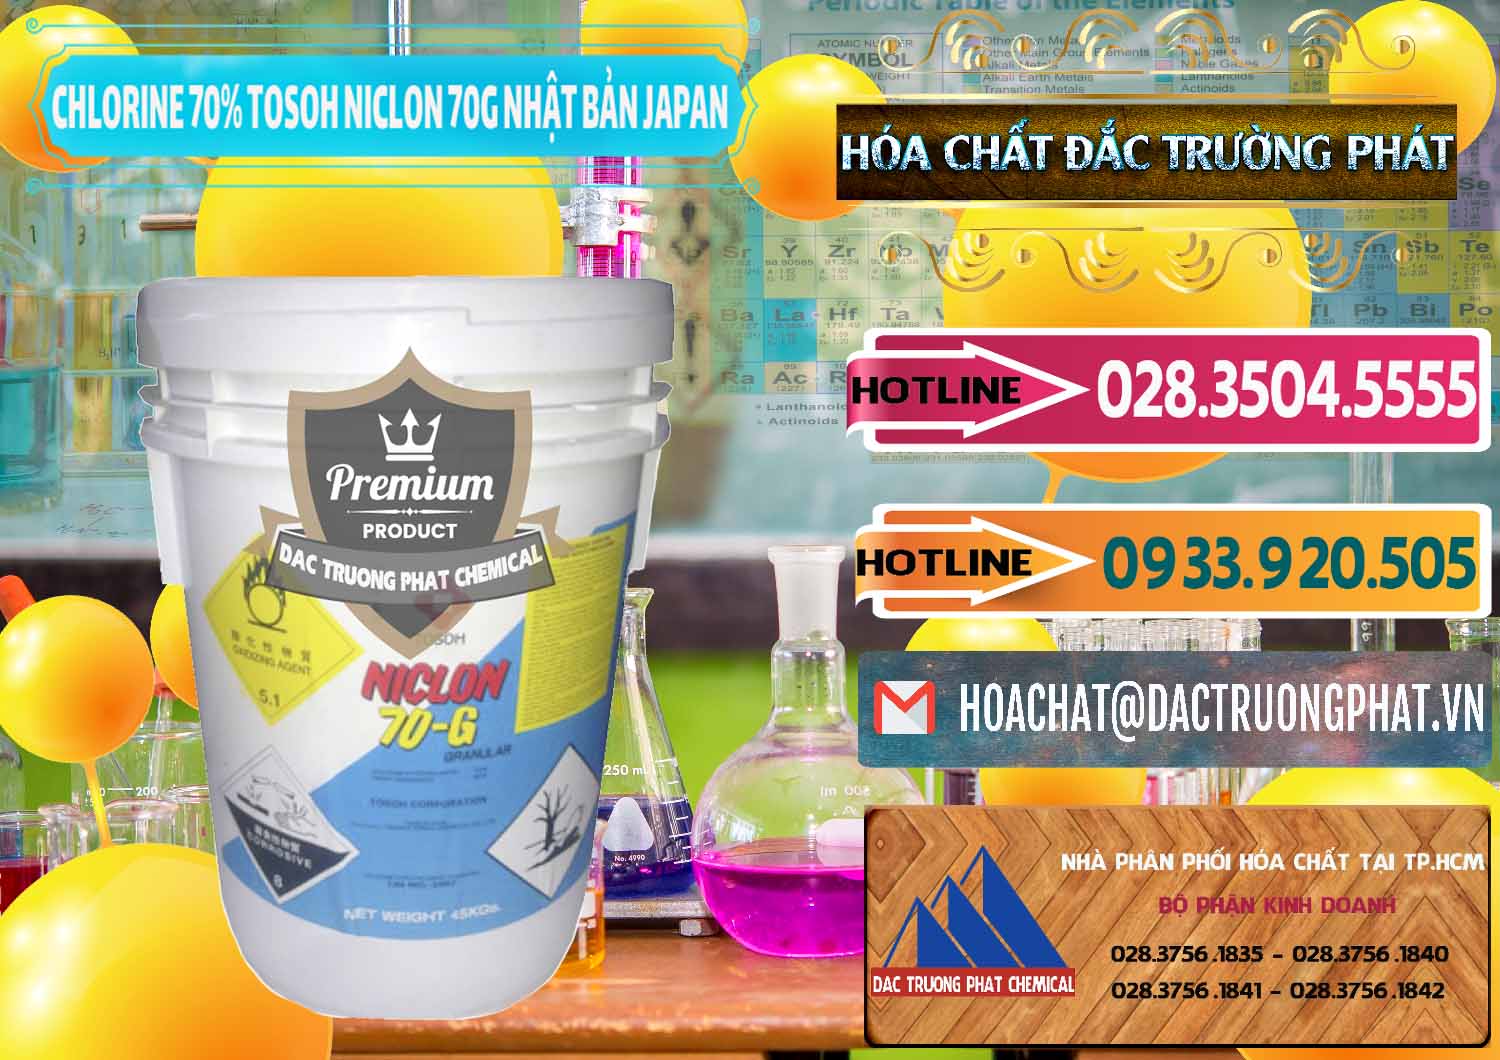 Cty cung cấp - bán Clorin – Chlorine 70% Tosoh Niclon 70G Nhật Bản Japan - 0242 - Cty chuyên phân phối - cung ứng hóa chất tại TP.HCM - dactruongphat.vn